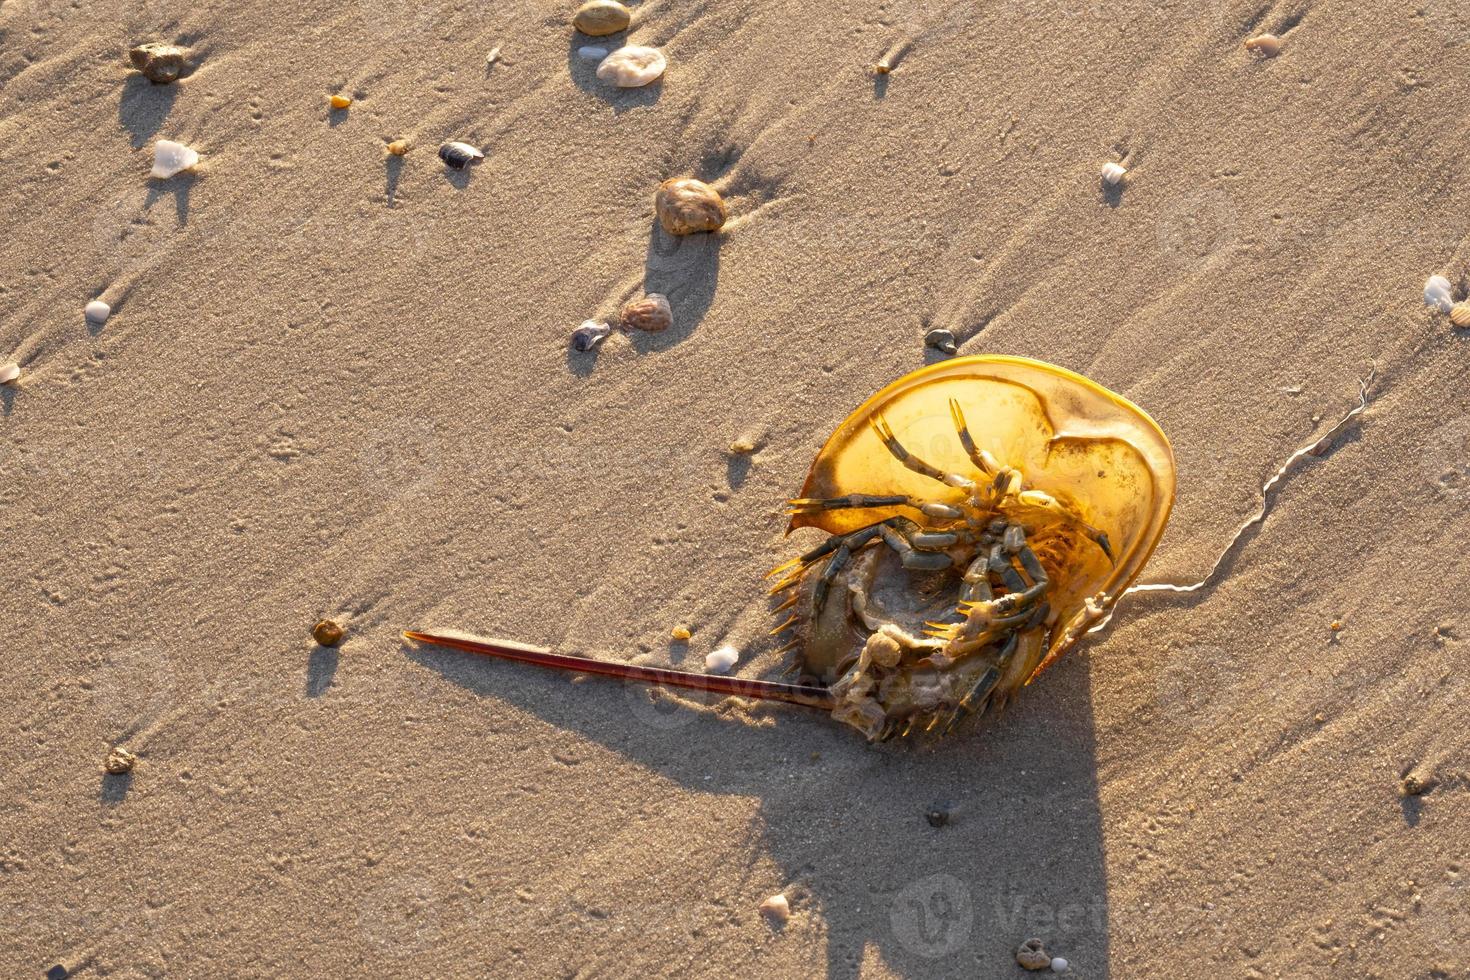 caranguejo-ferradura marrom animal mar cauda afiada mortos vire na praia de areia dourada. vida de casca dura em tropical natural. foto